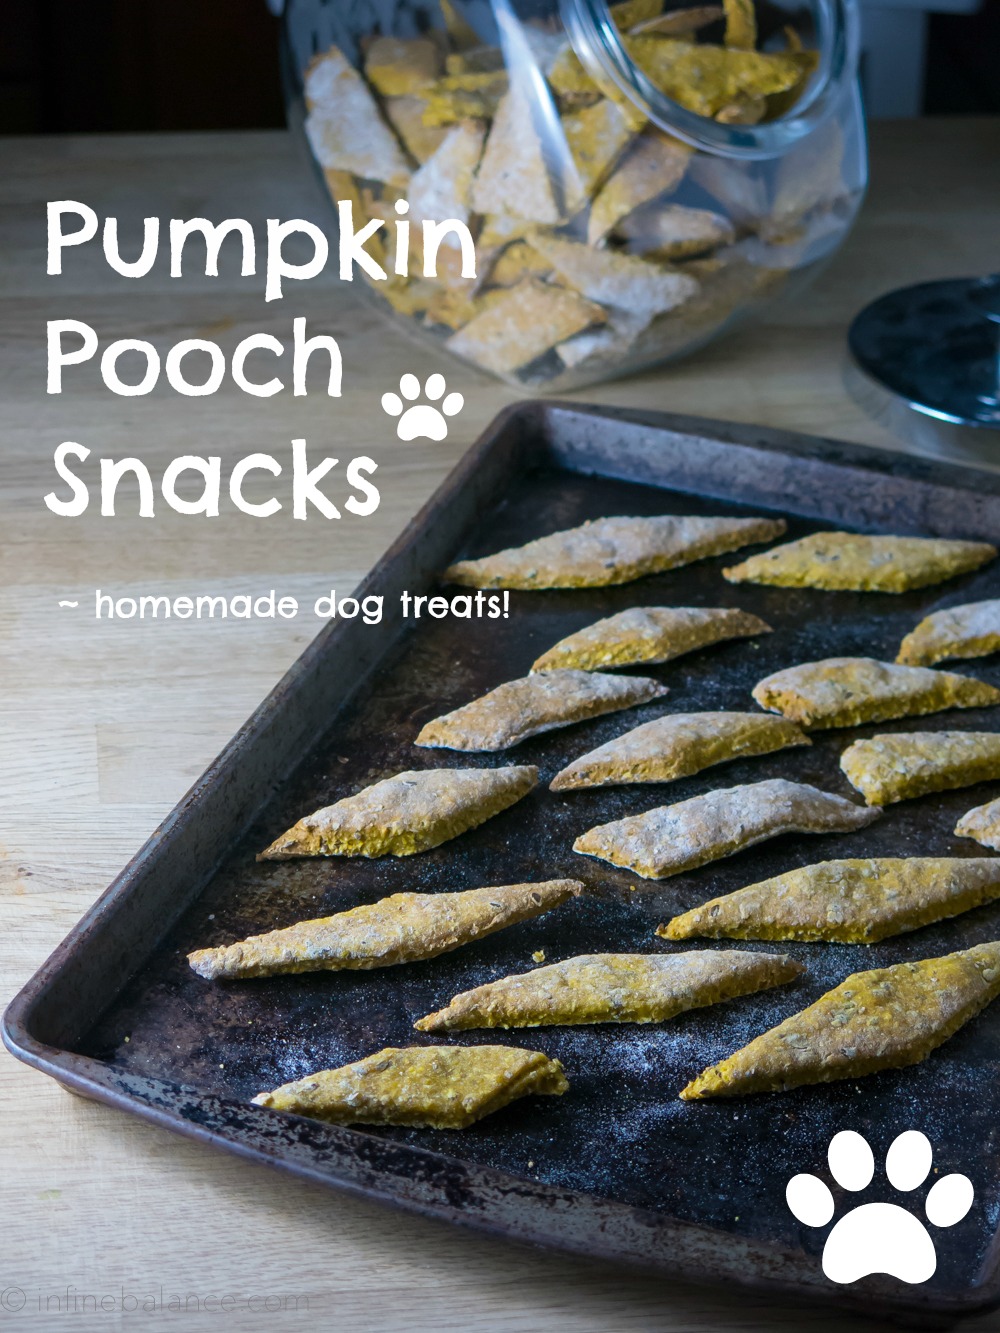 Pumpkin Pooch Snacks | infinebalance #recipe